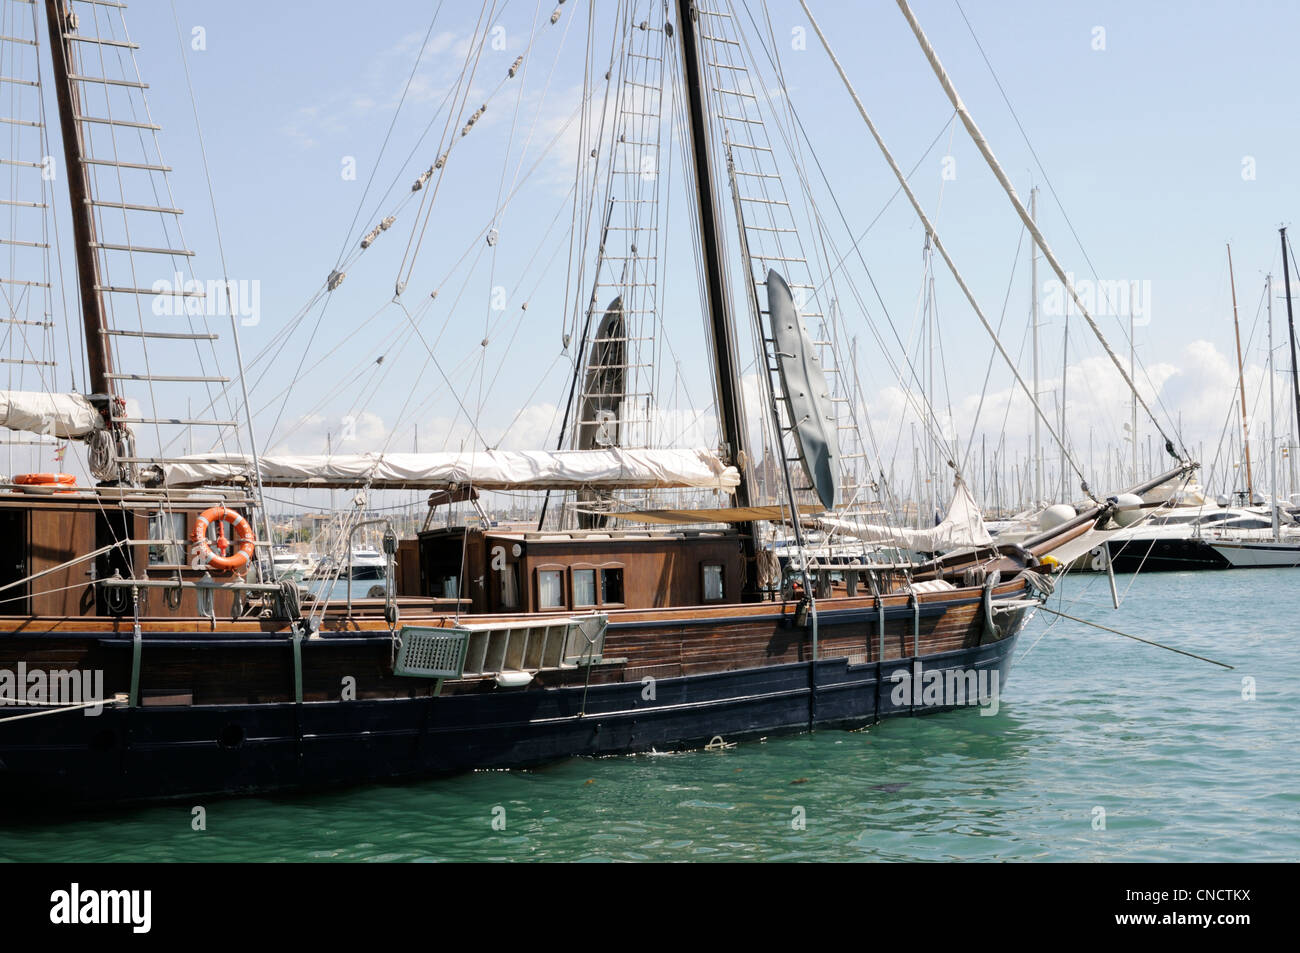 Segelschiff Rafael Verdera, Palma, Mallorca, Spanien, Europa. | Sailing ship Rafael Verdera, Palma, Majorca, Spain, Europe. Stock Photo